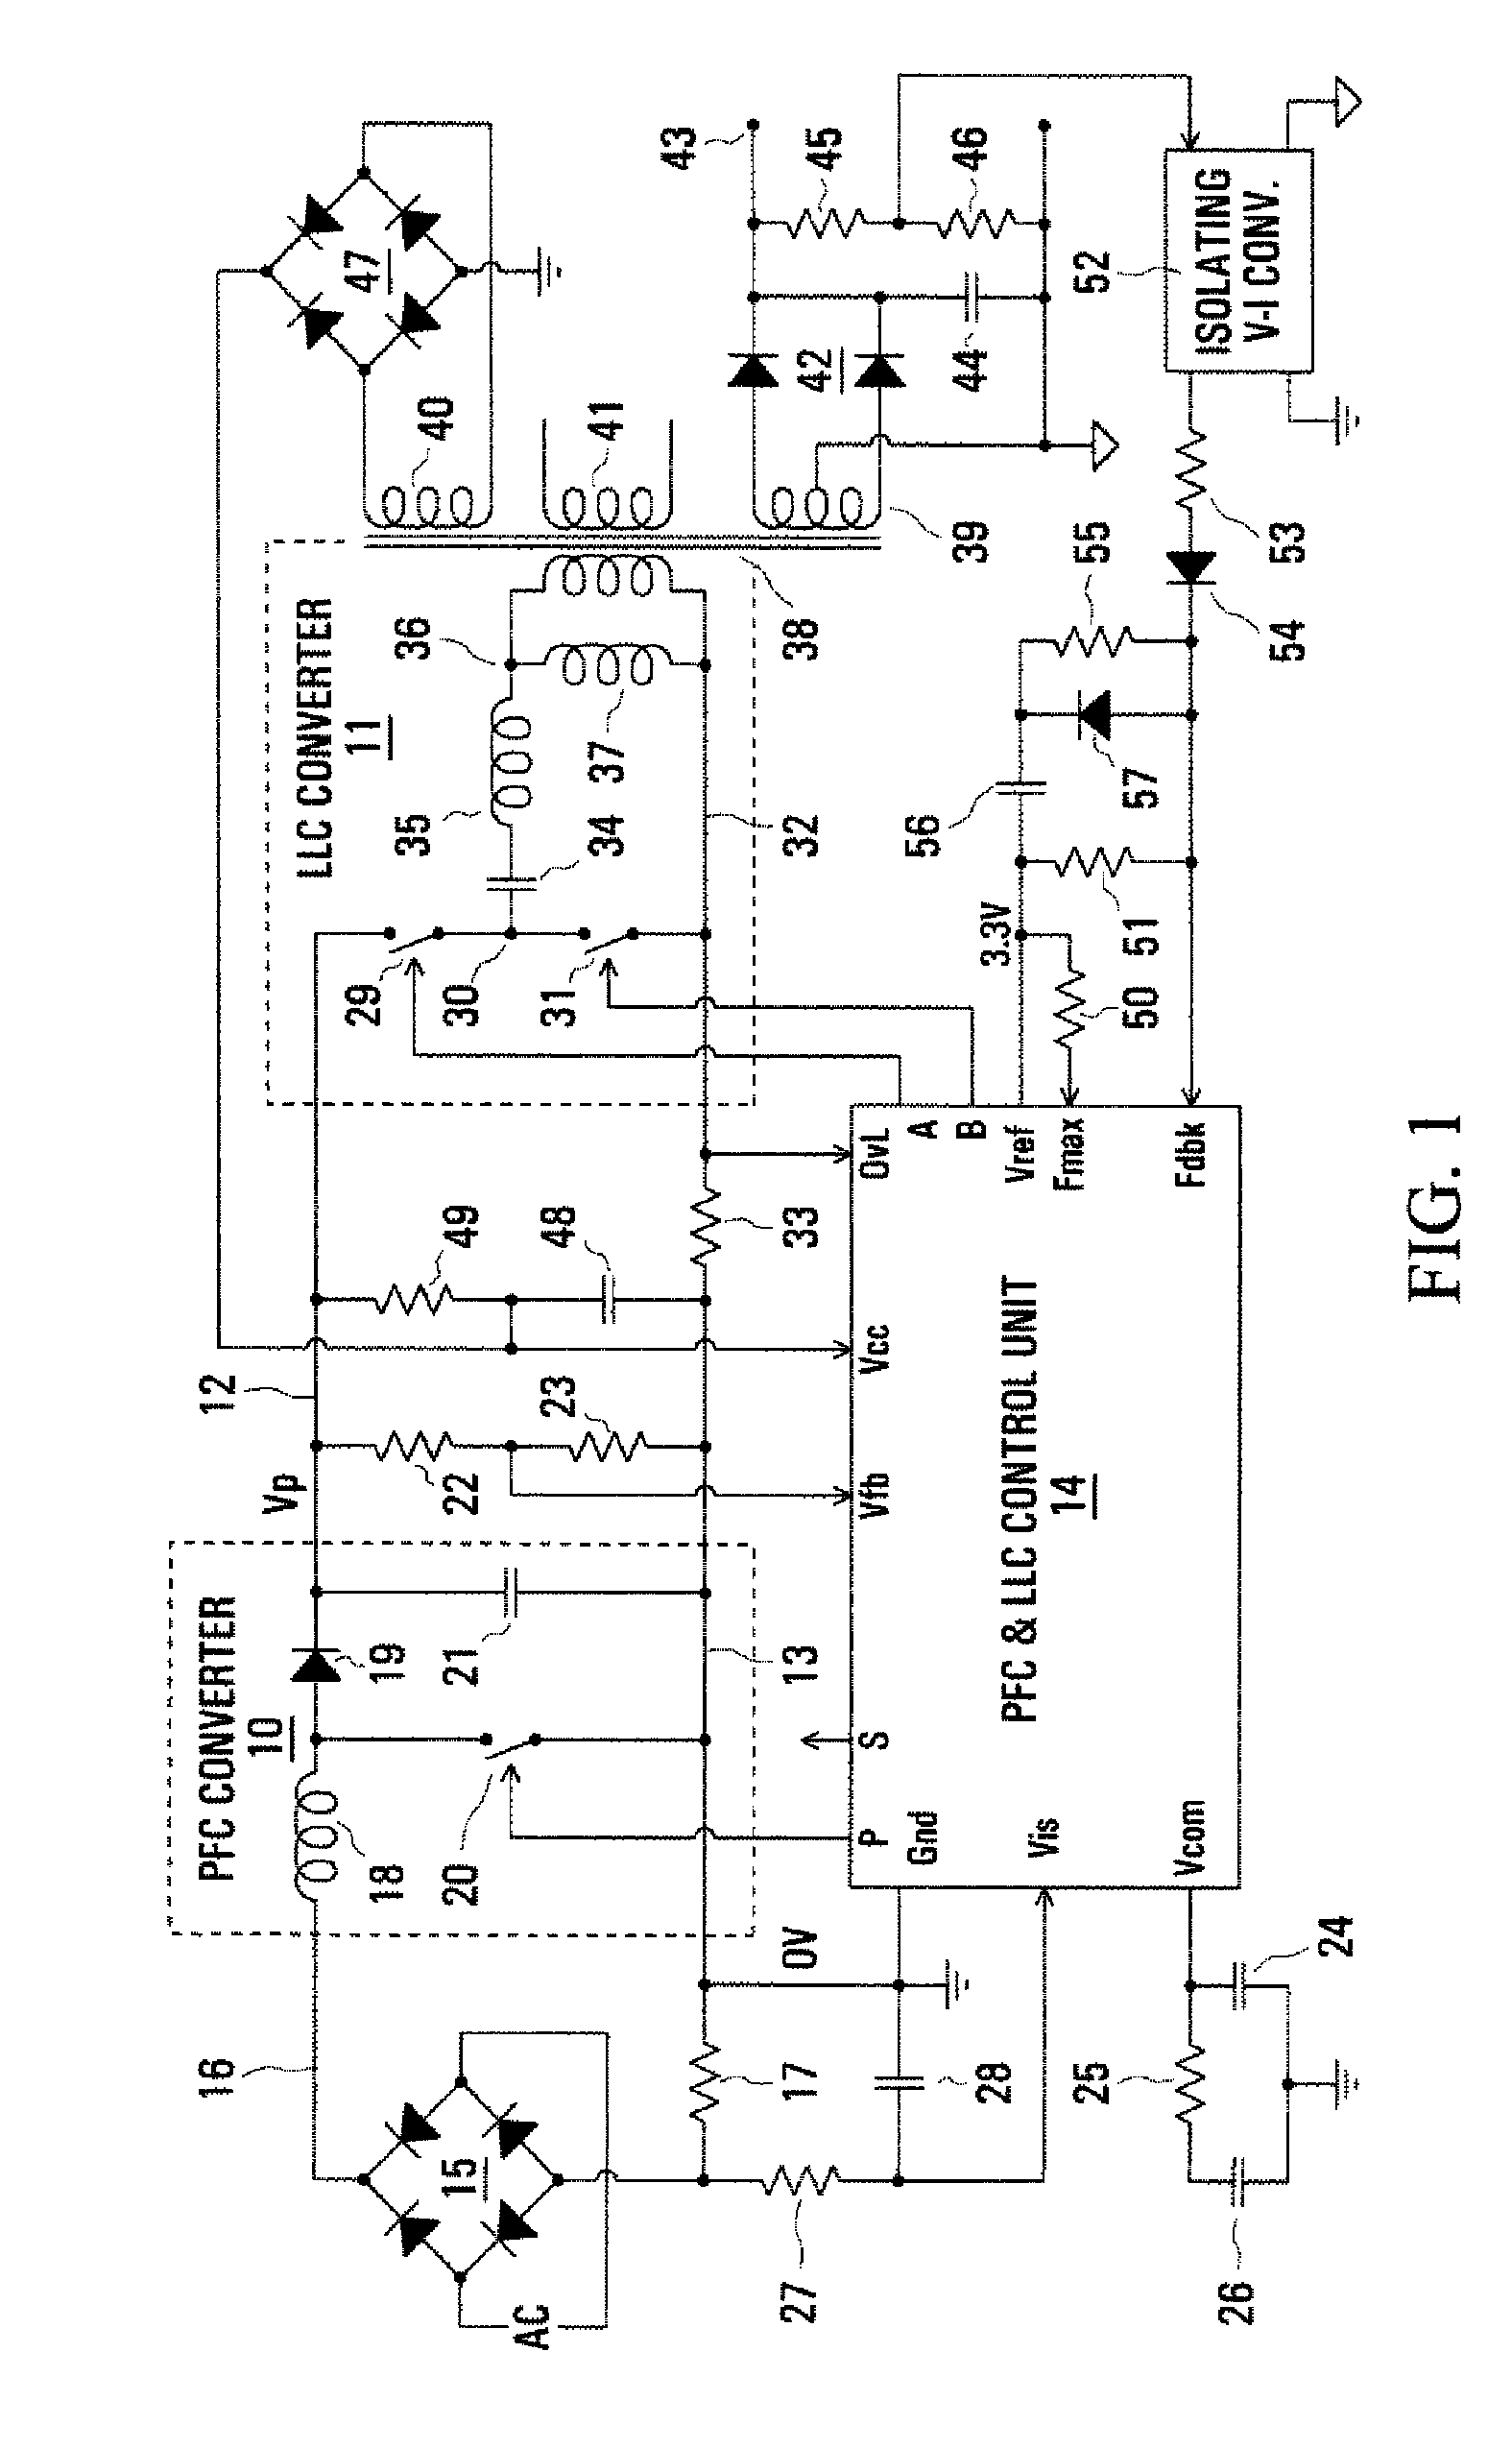 Control arrangement for a PFC power converter